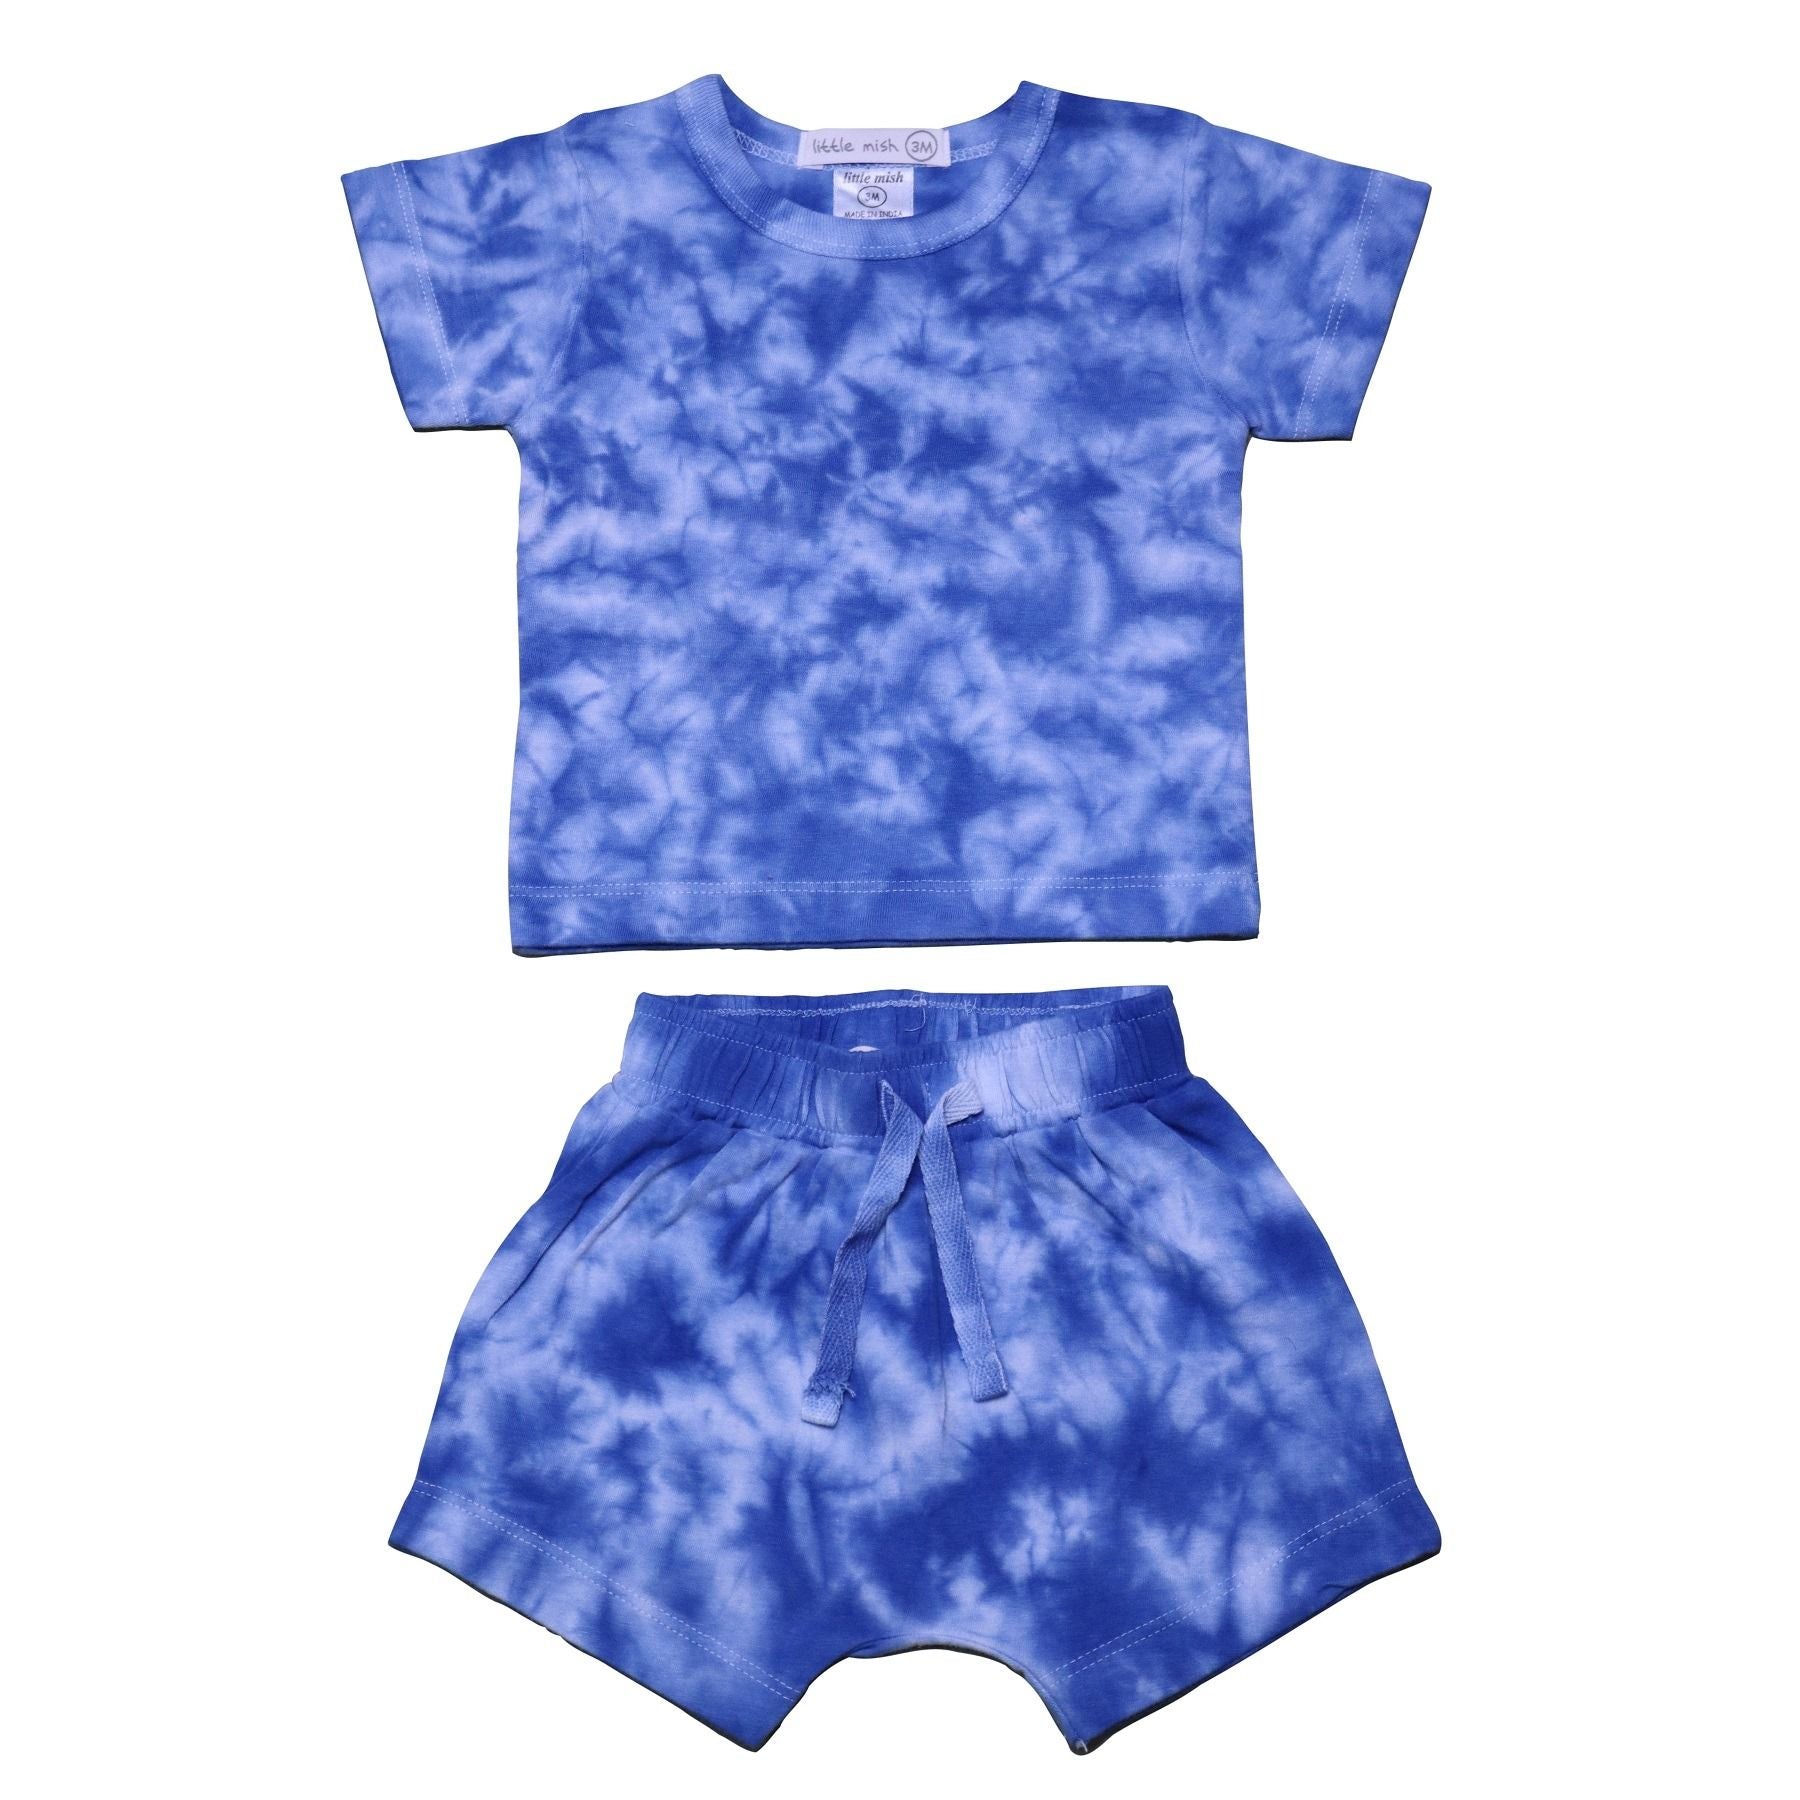 Blue Tie Dye Tee & Short Set - Twinkle Twinkle Little One